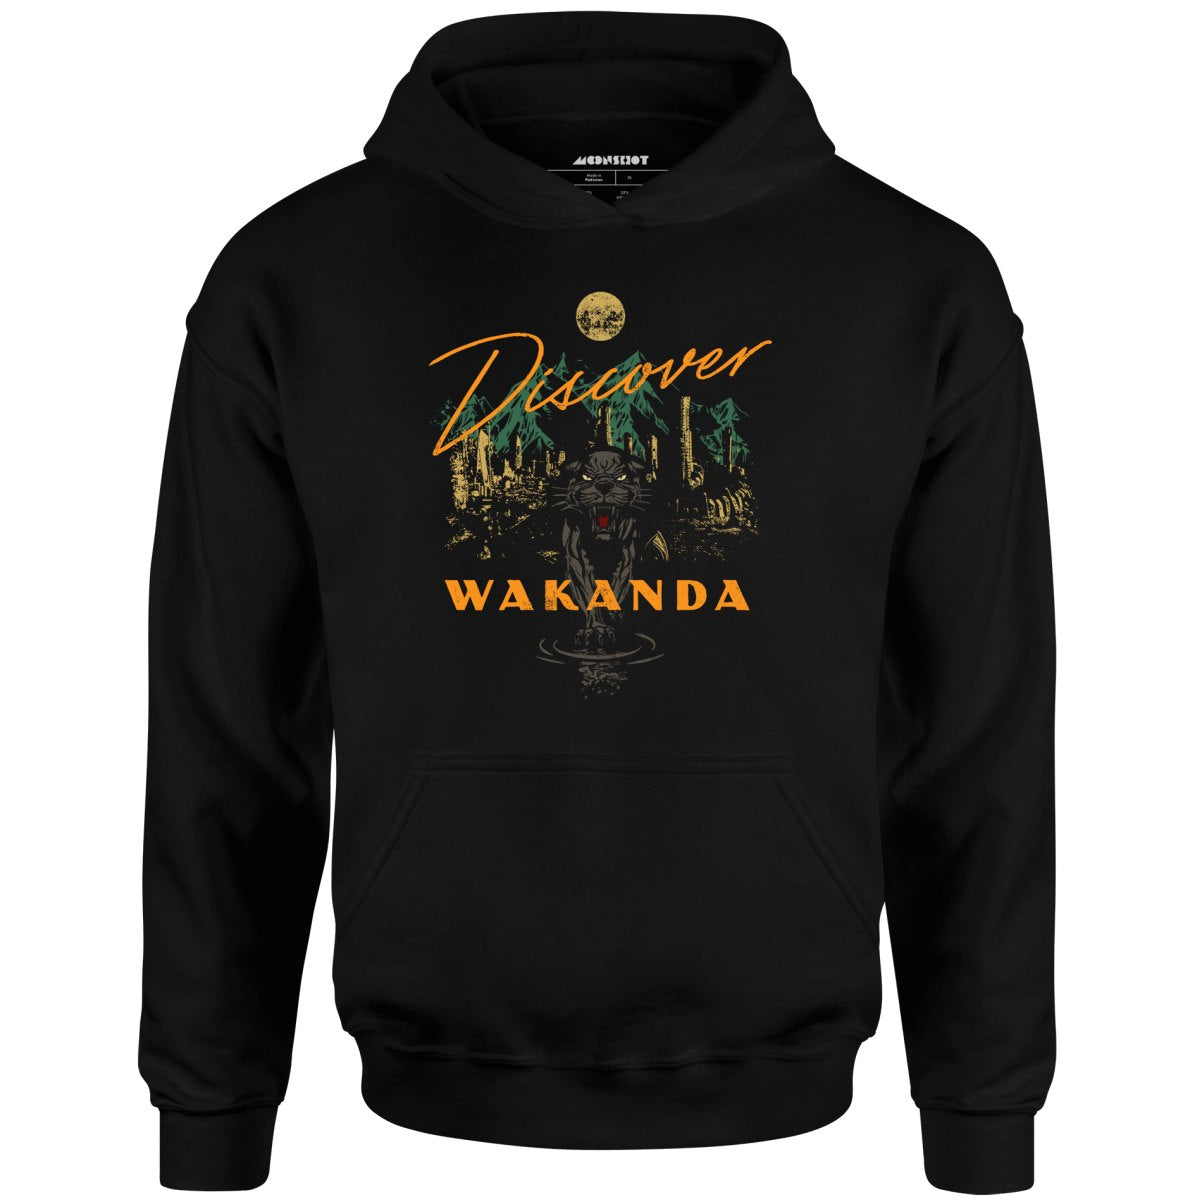 Discover Wakanda - Unisex Hoodie